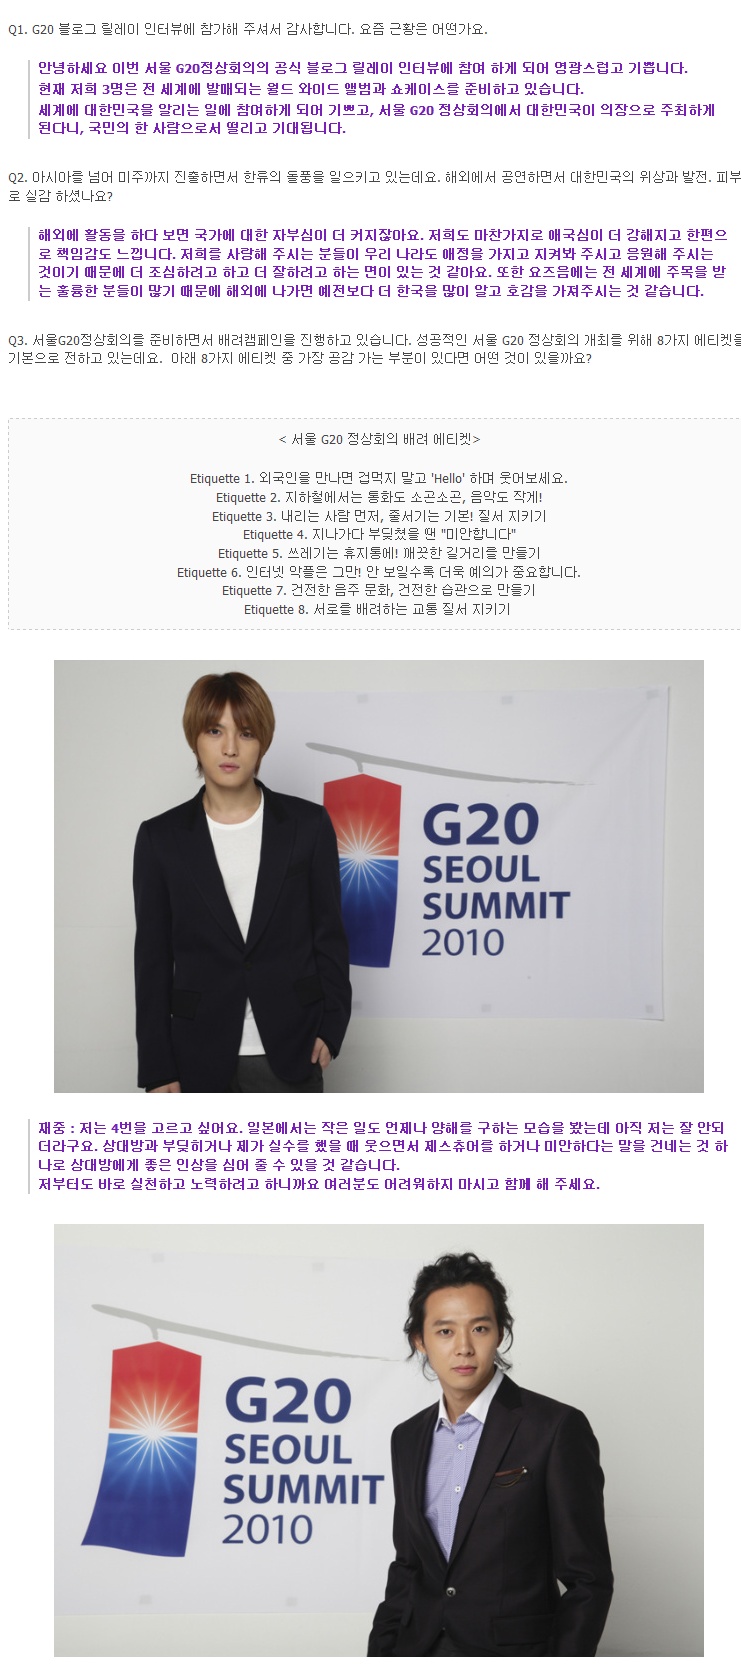 서울 G20 정상회의 릴레이 인터뷰 5th - 재중, 유천, 준수